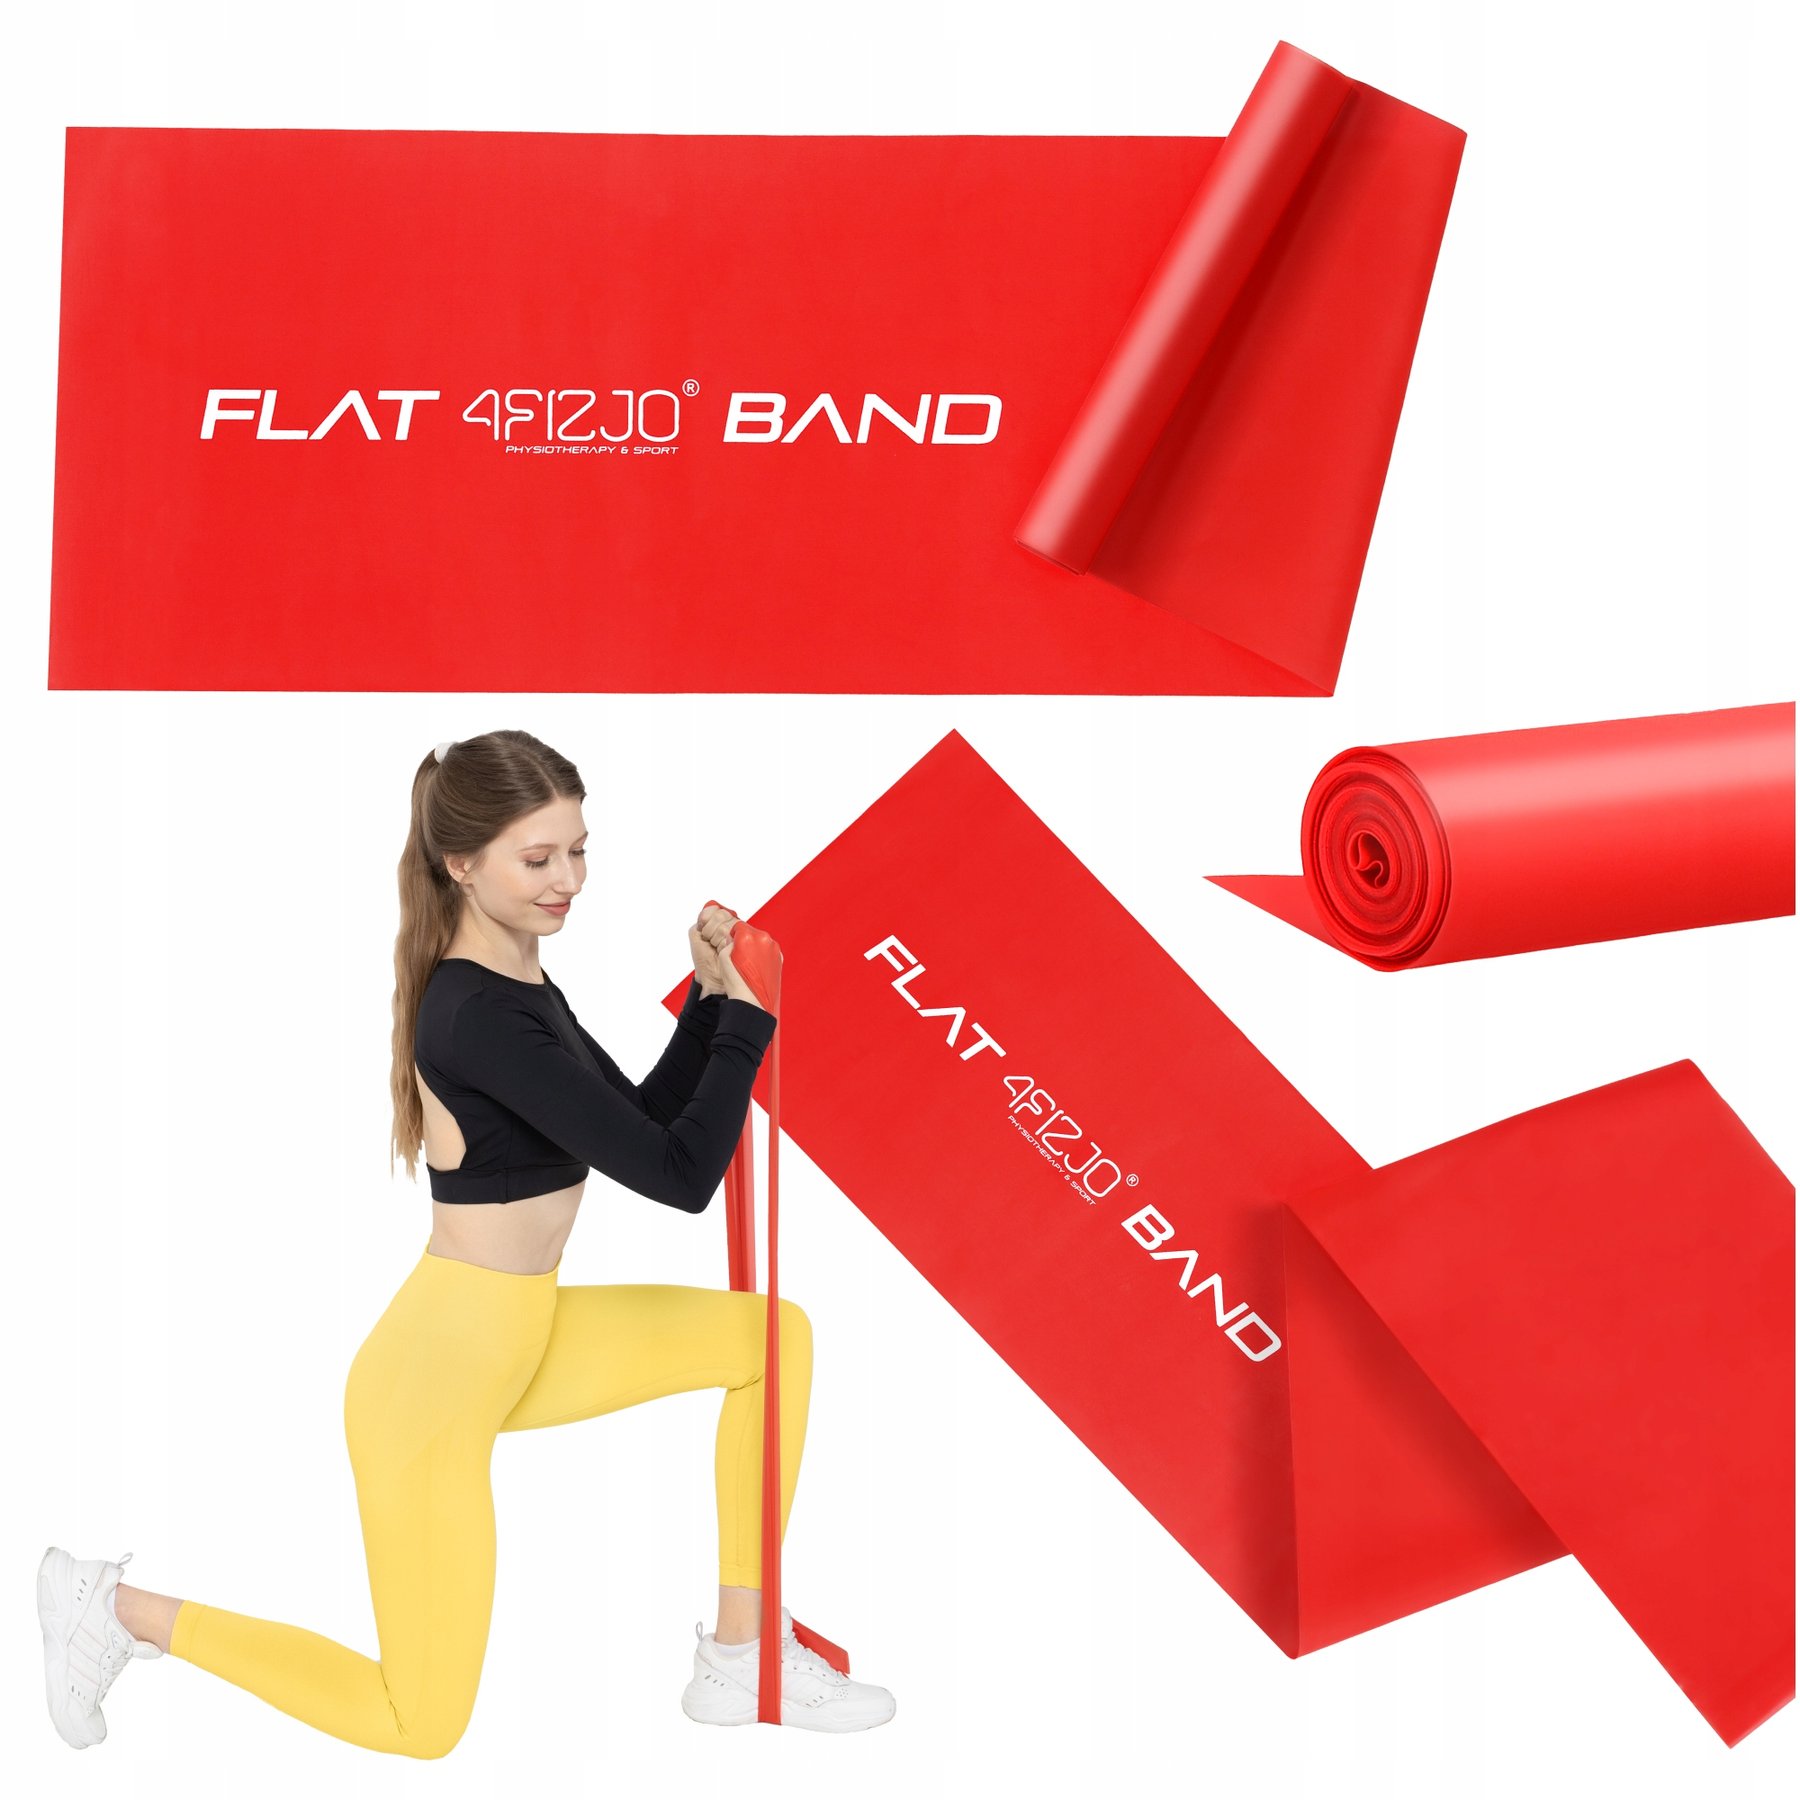 Стрічка-еспандер для спорту та реабілітації 4FIZJO Flat Band 200 х 15 cм 2-4 кг 4FJ0004